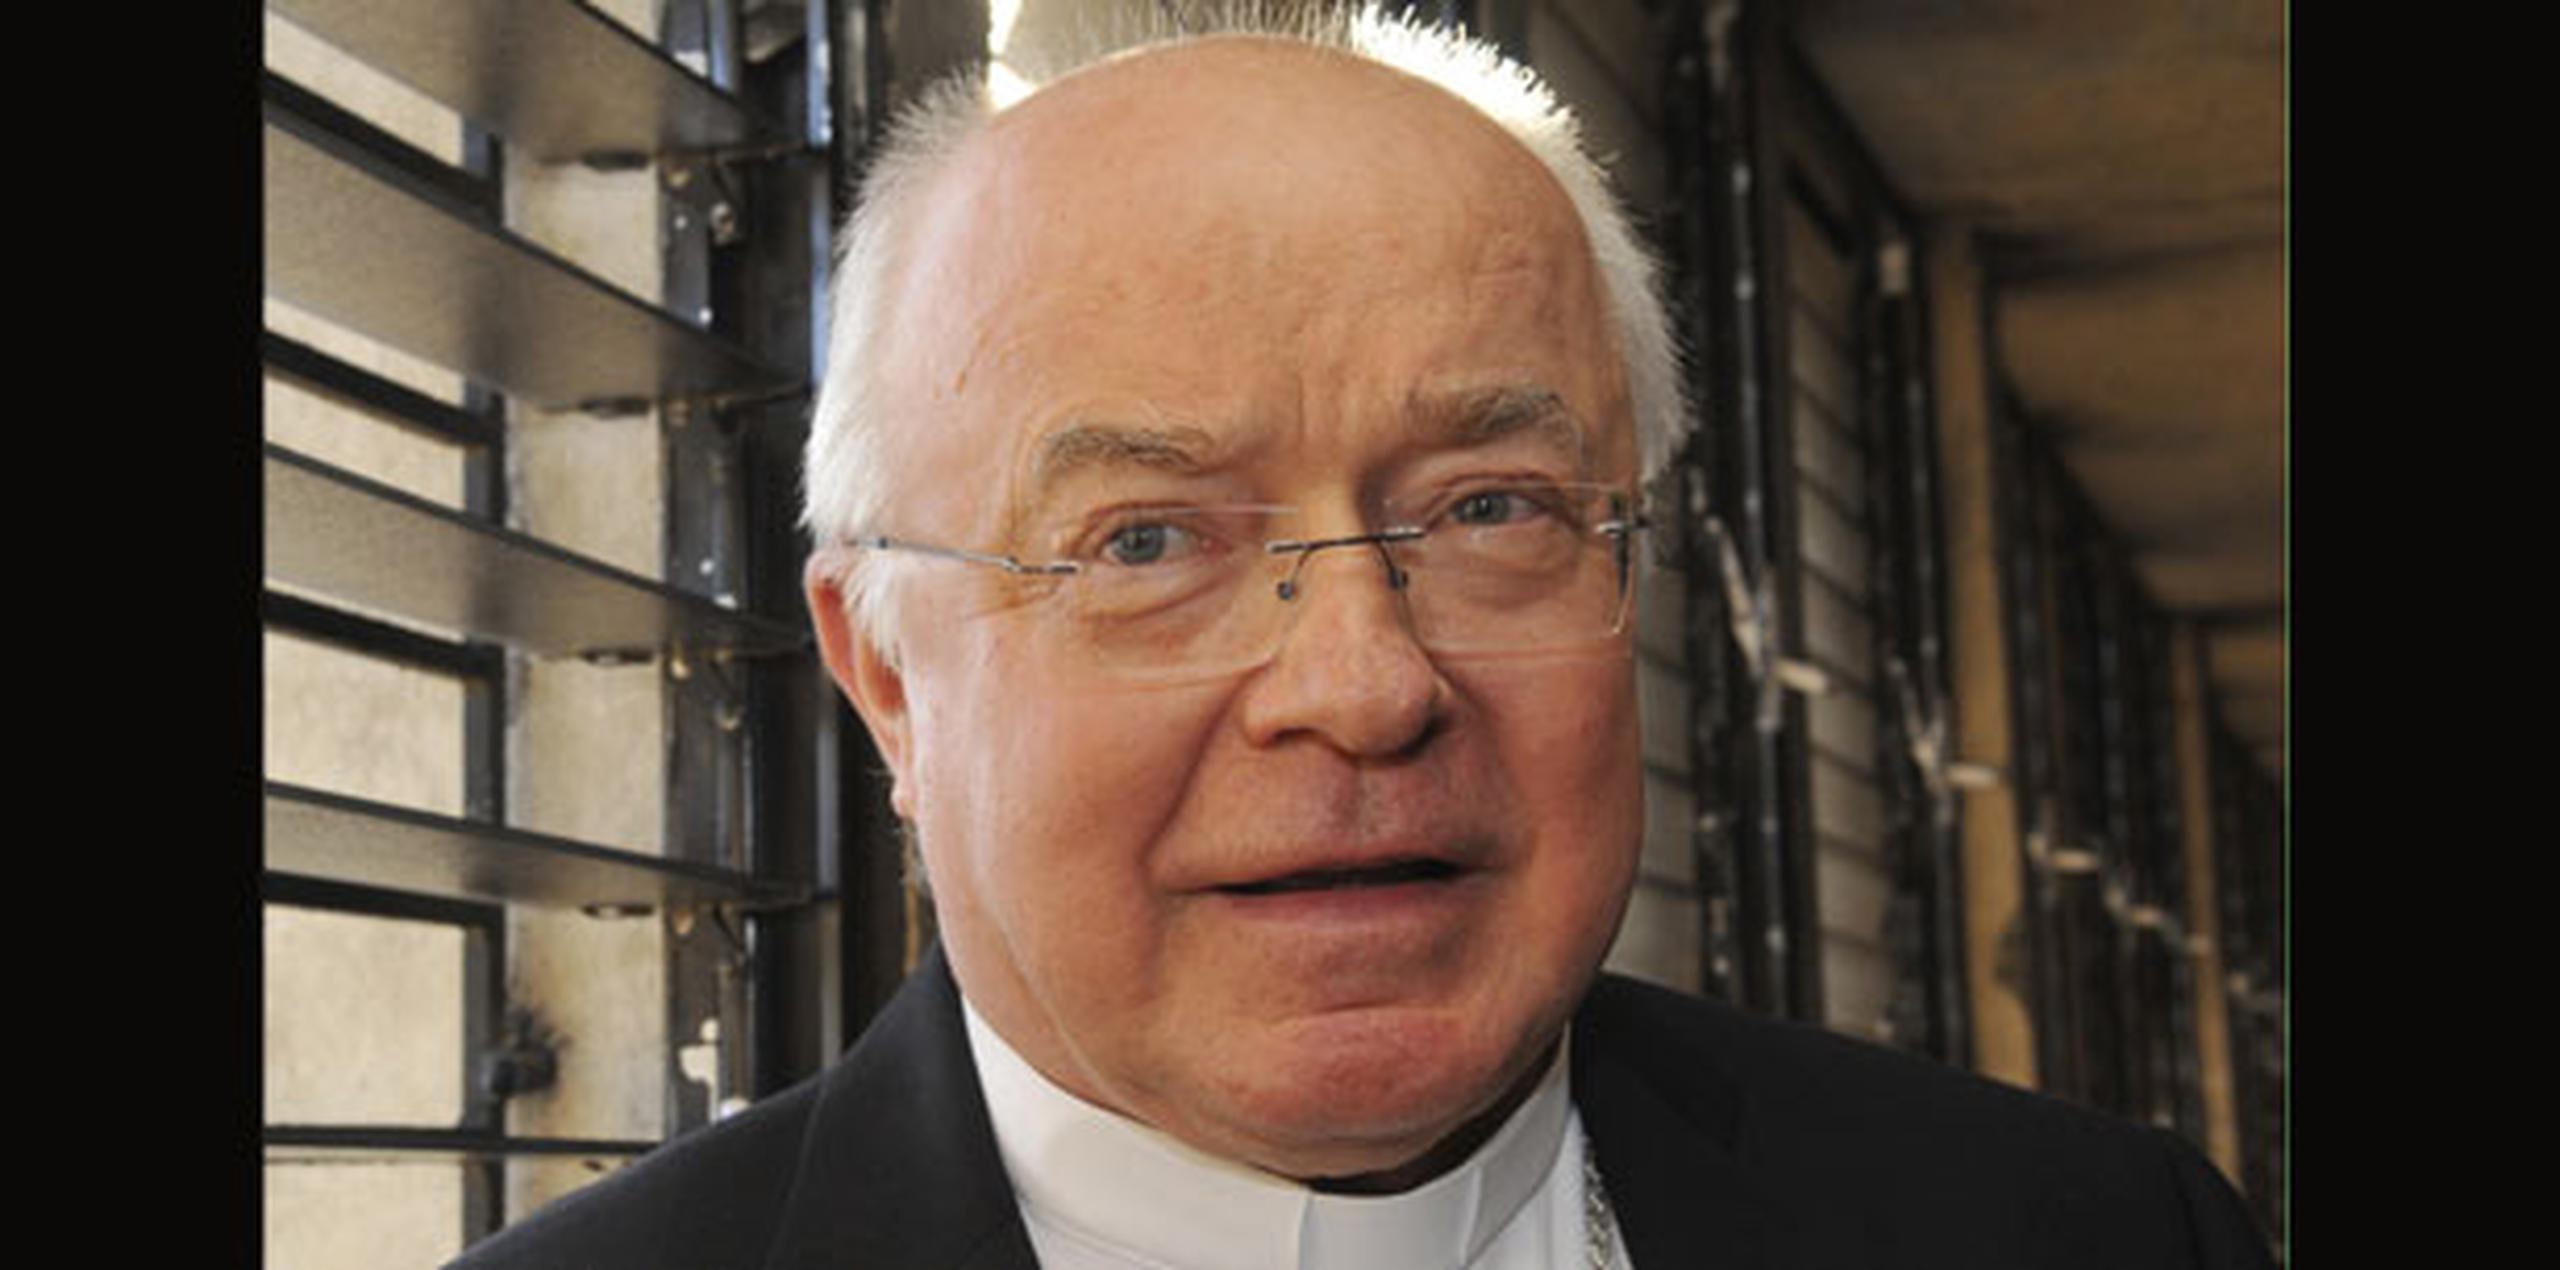 Wesolowski, designado nuncio apostólico en República Dominicana en 2008 por el entonces papa Benedicto XVI, fue destituido en agosto de 2013 por el actual pontífice Francisco. (Archivo)